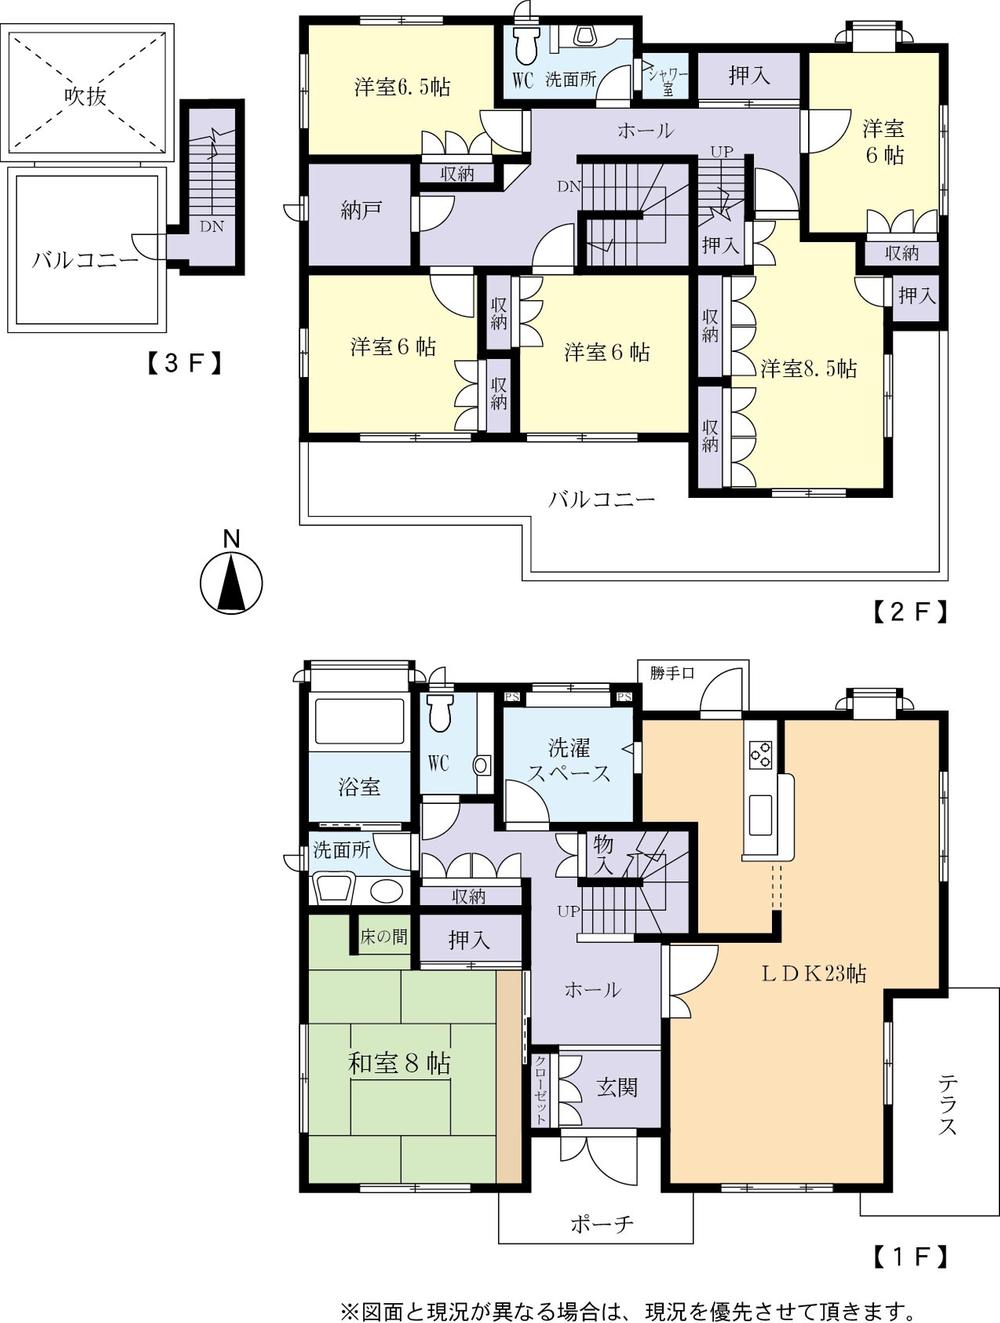 Floor plan. 25,800,000 yen, 6LDK + S (storeroom), Land area 589.53 sq m , Building area 193.69 sq m